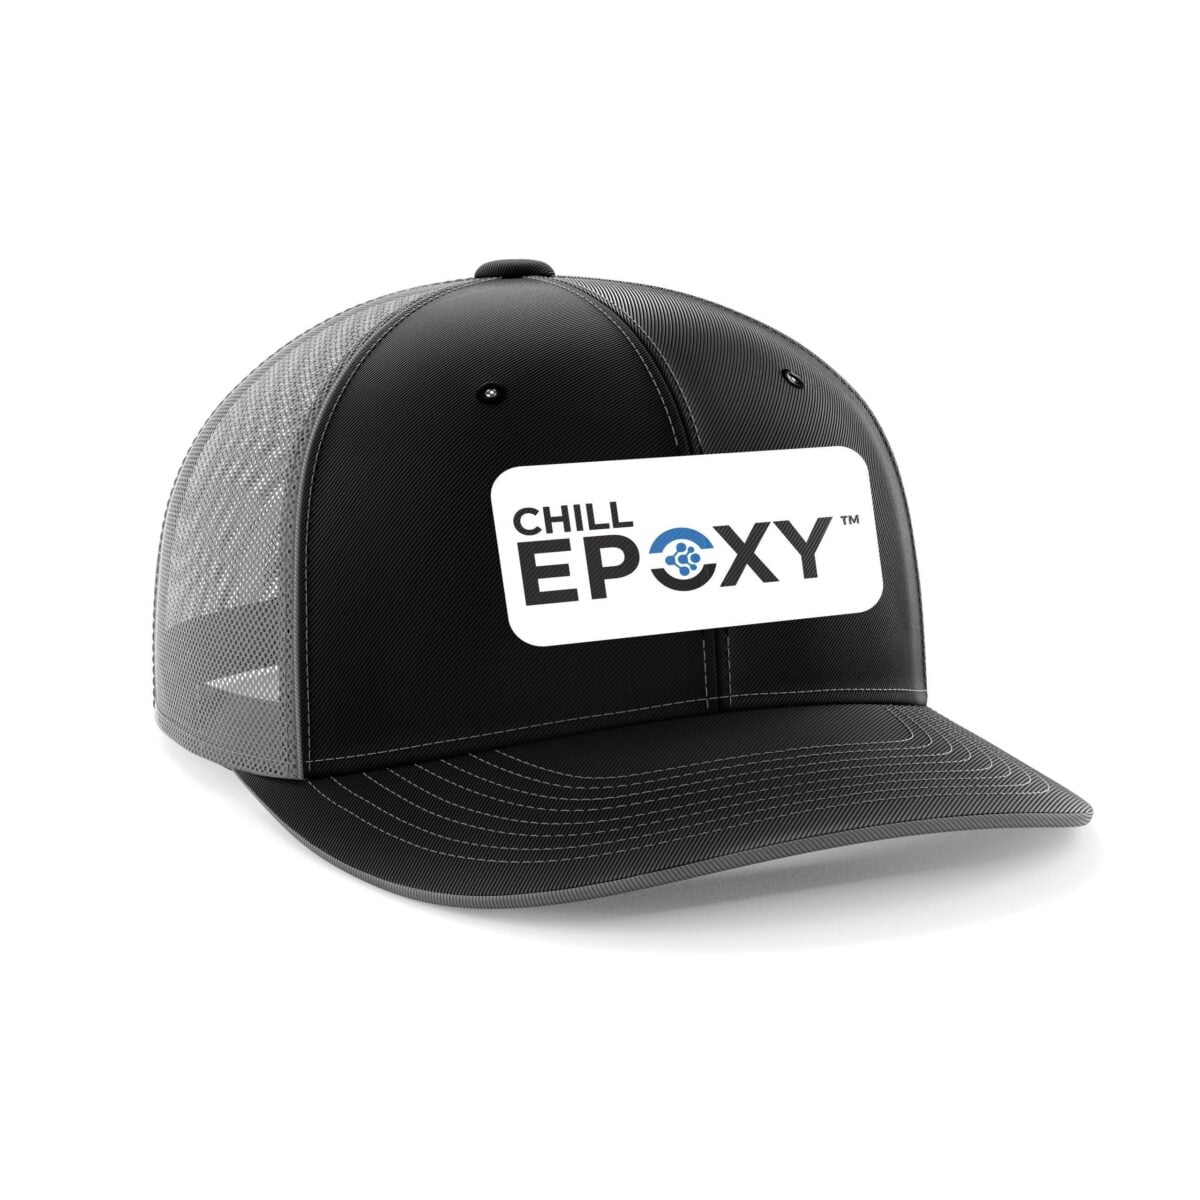 CHILL EPOXY™ Brand Cap